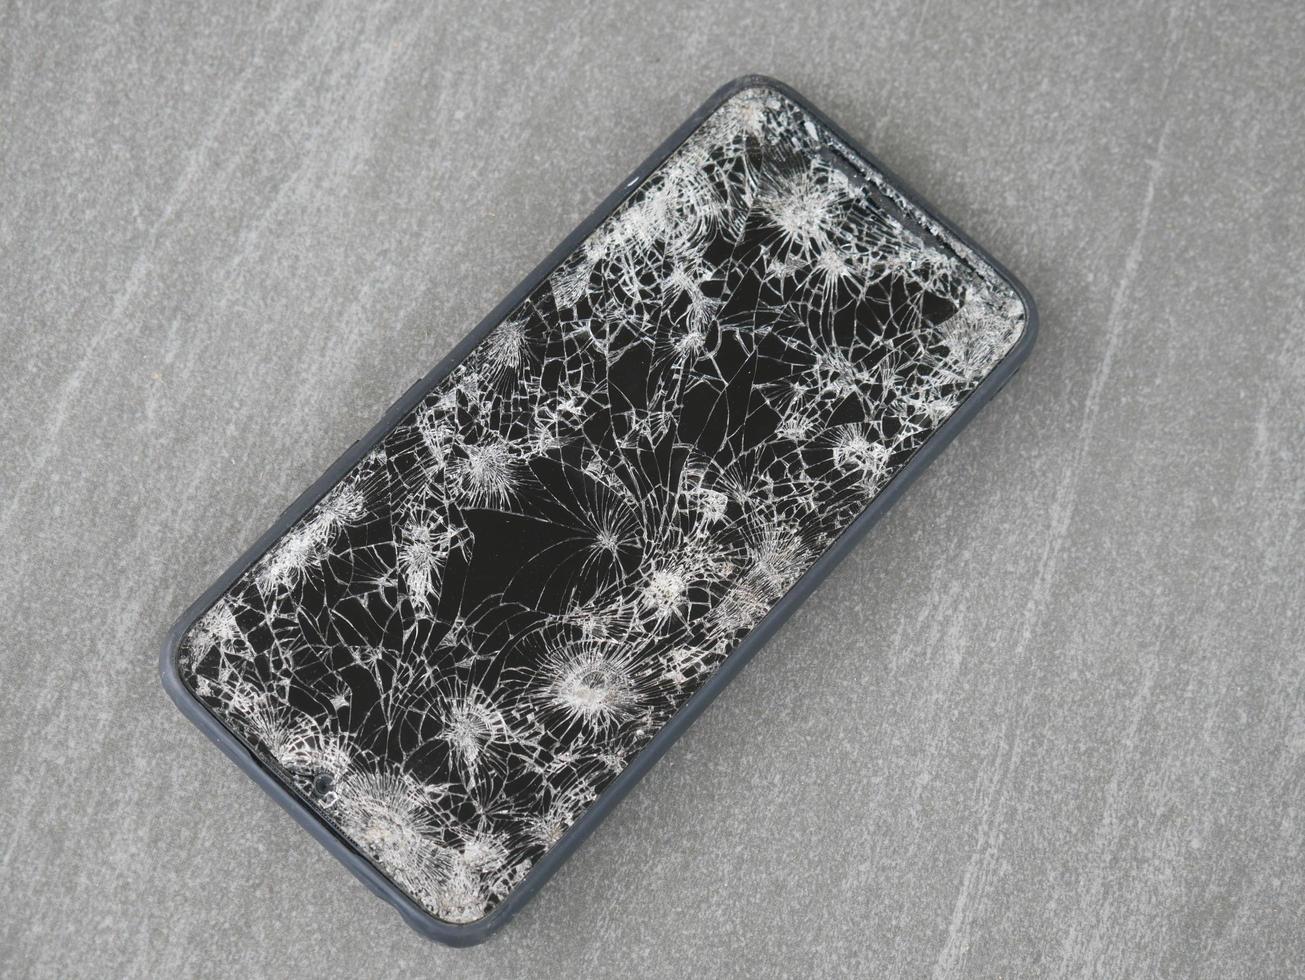 Das Smartphone schlug auf dem Boden auf, es fiel in eine Ritze. foto